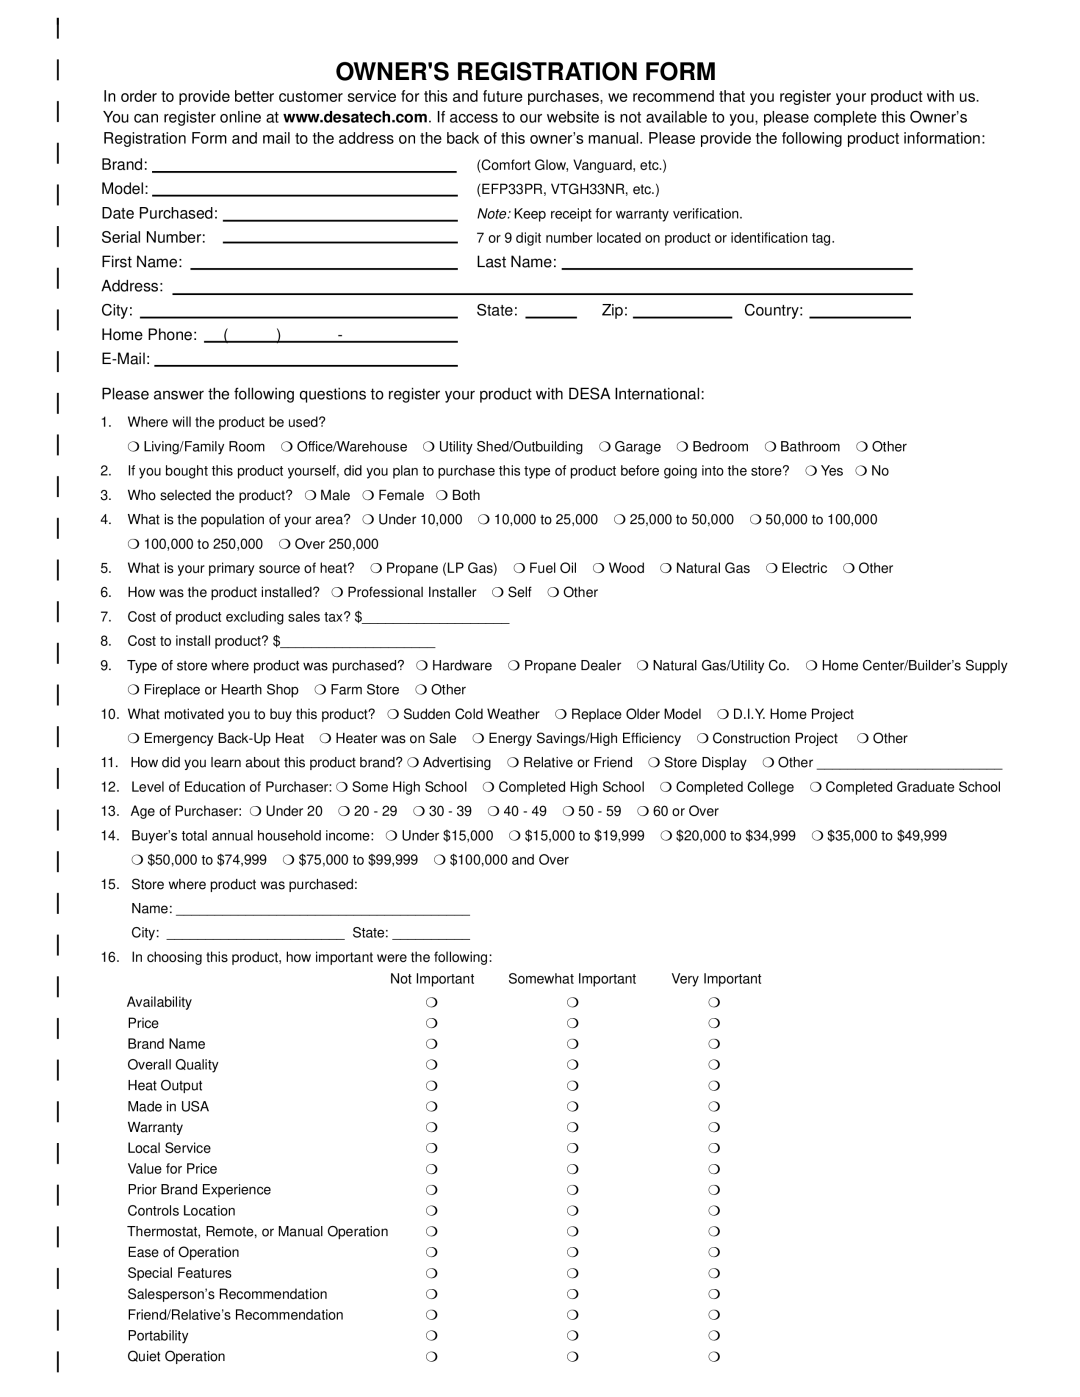 Desa Tech CDVBPC, CDVBNC manual Owners Registration Form 